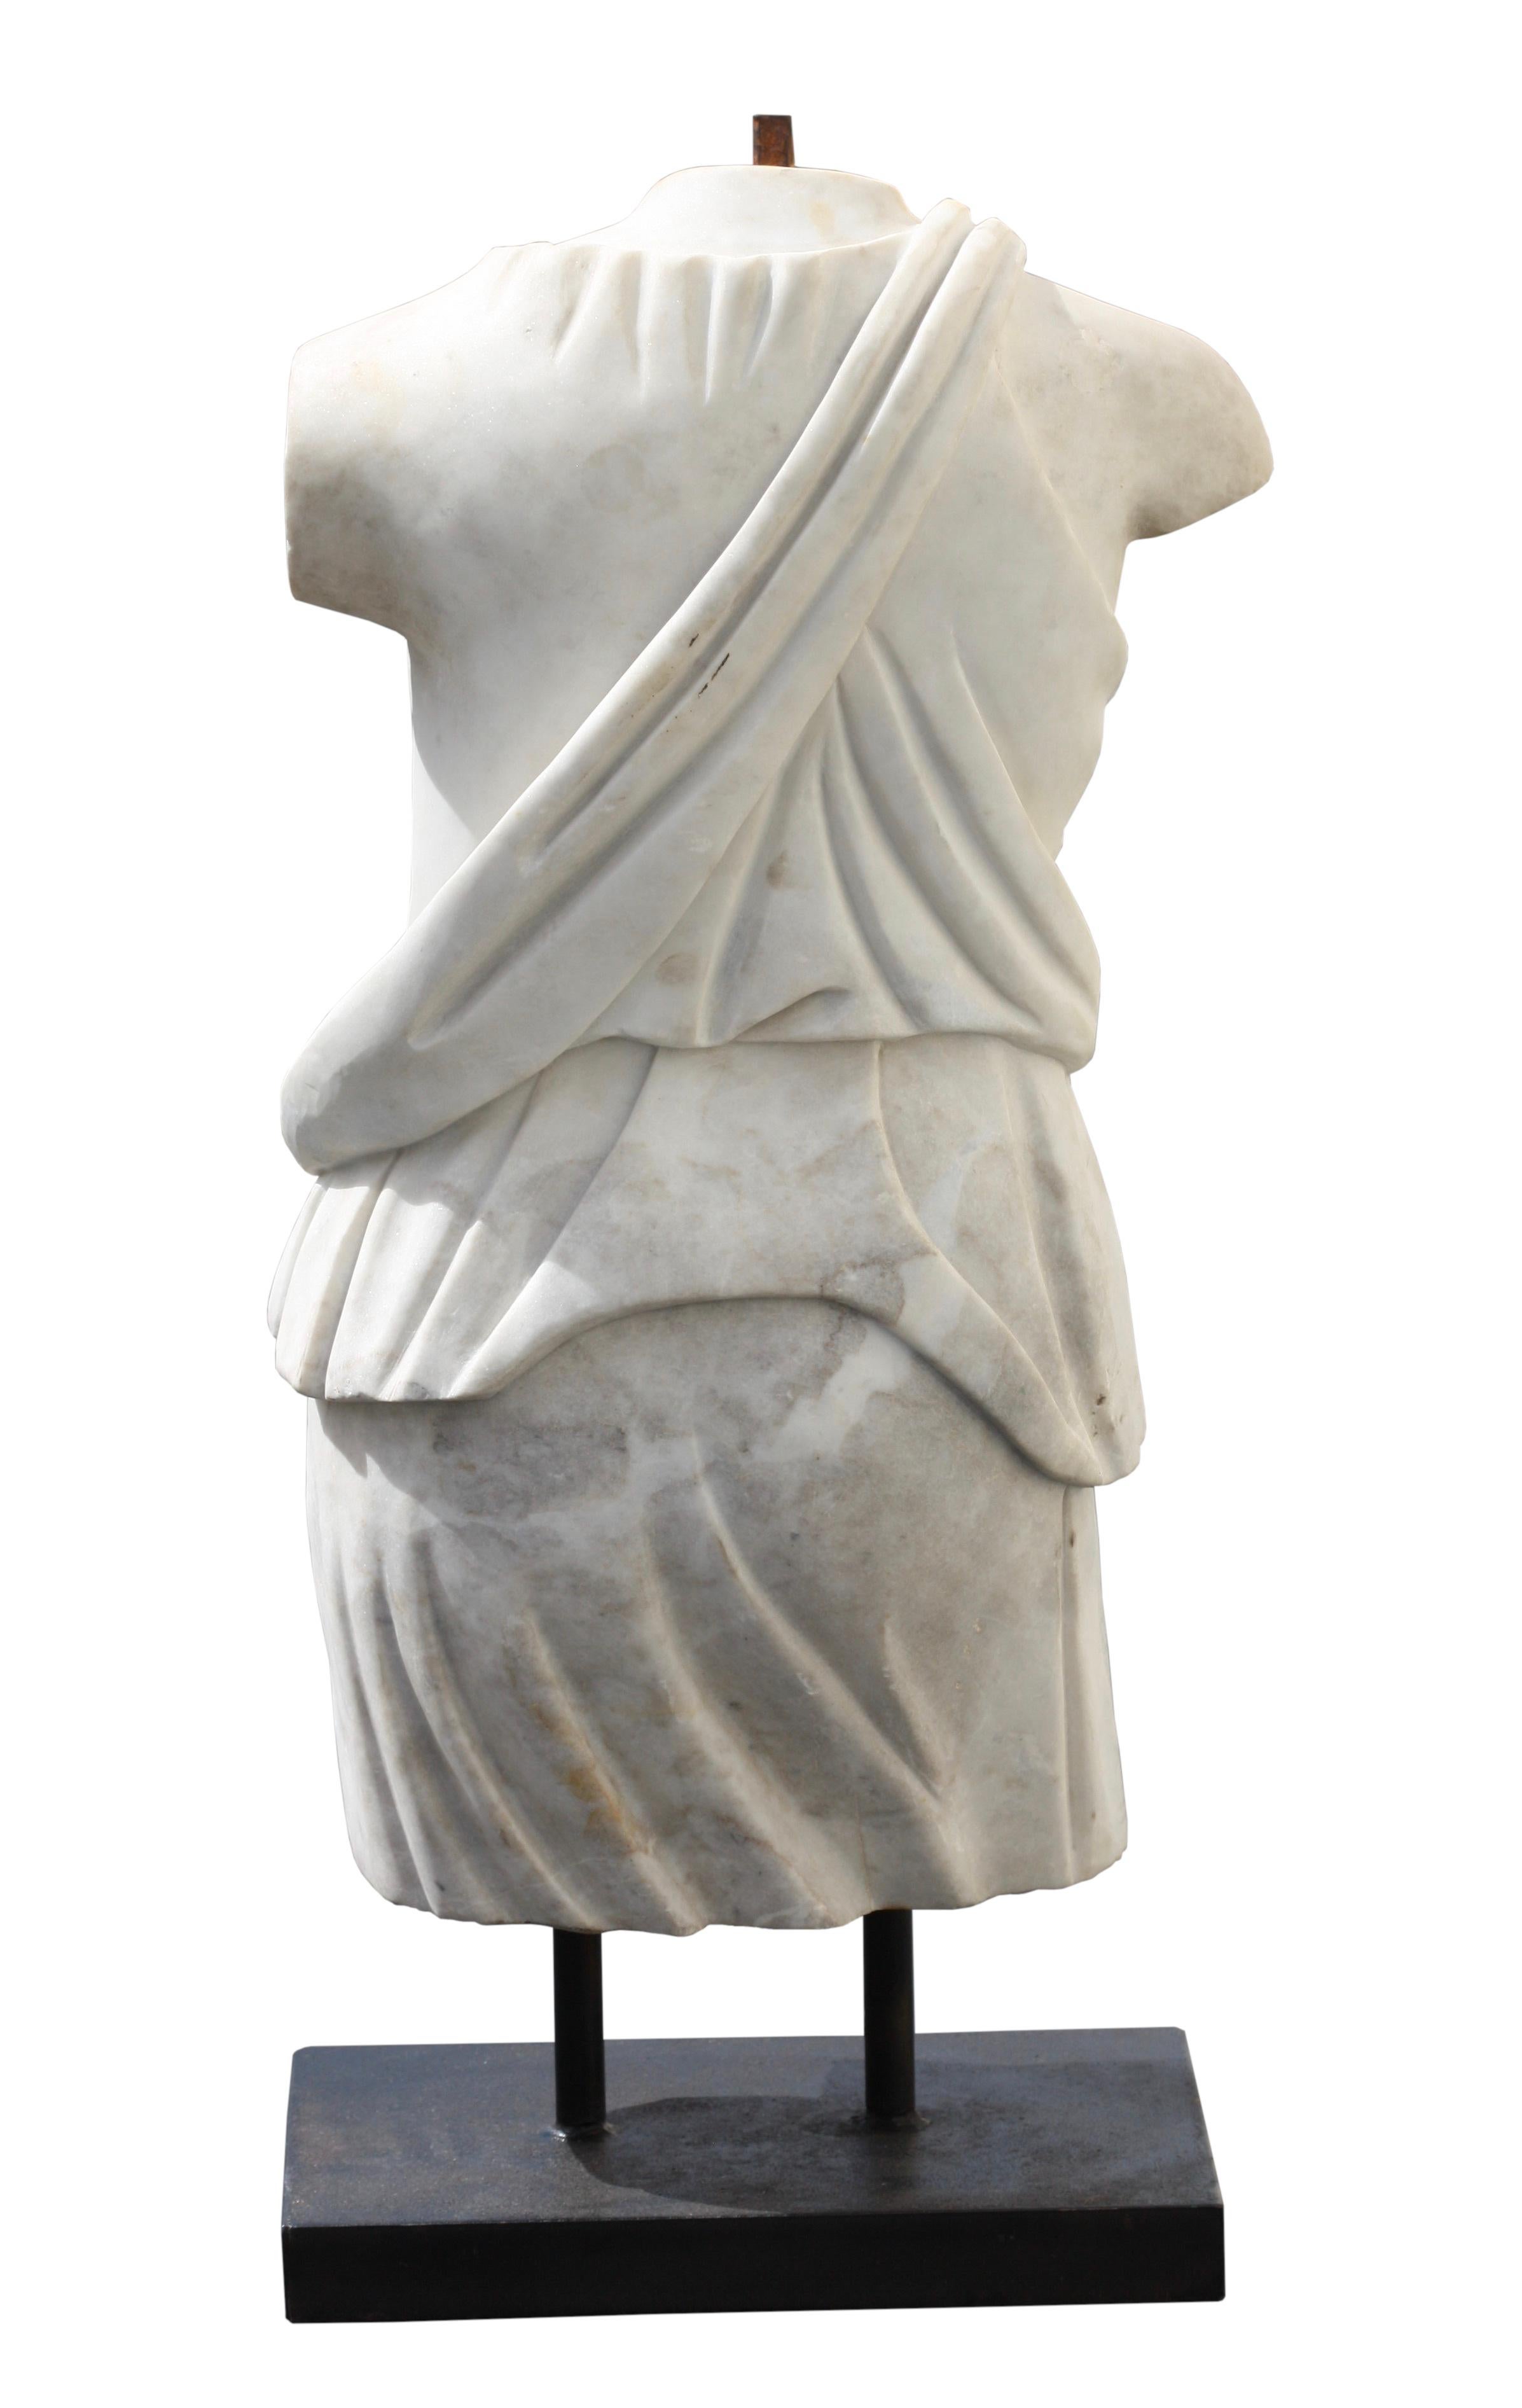 Figure de torse en marbre italien, 19e/20e siècle
portant une tunique tombant de l'épaule droite et laissant le sein nu, les deux extrémités du filet tombant sur la nuque, sur une base en bronze, hauteur 81 cm, 32 in.